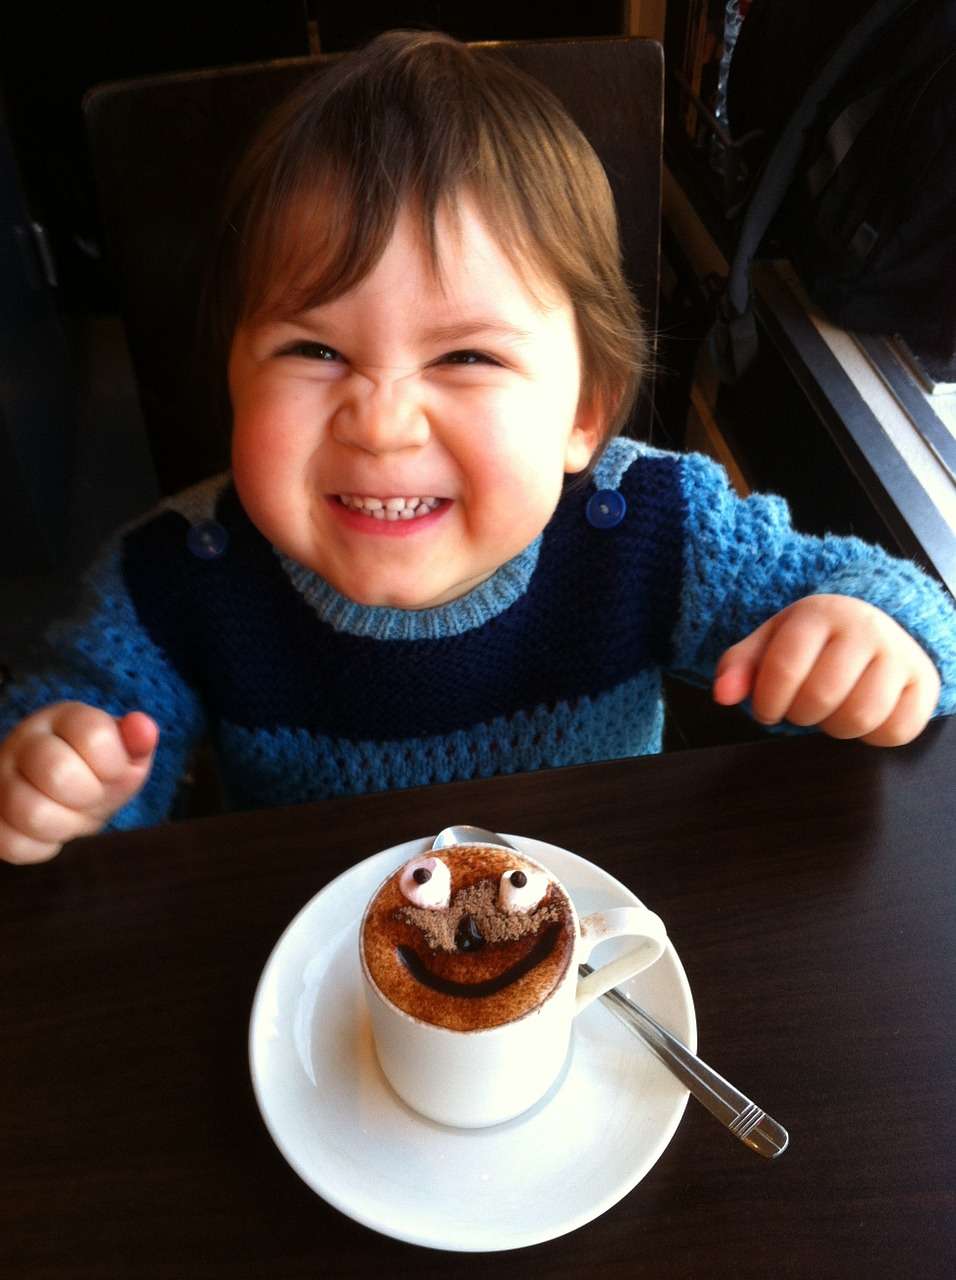 Criança brinca perto de xícara de chocolate: a dica é limitar o consumo de açúcar ou doces a pequenas quantidades